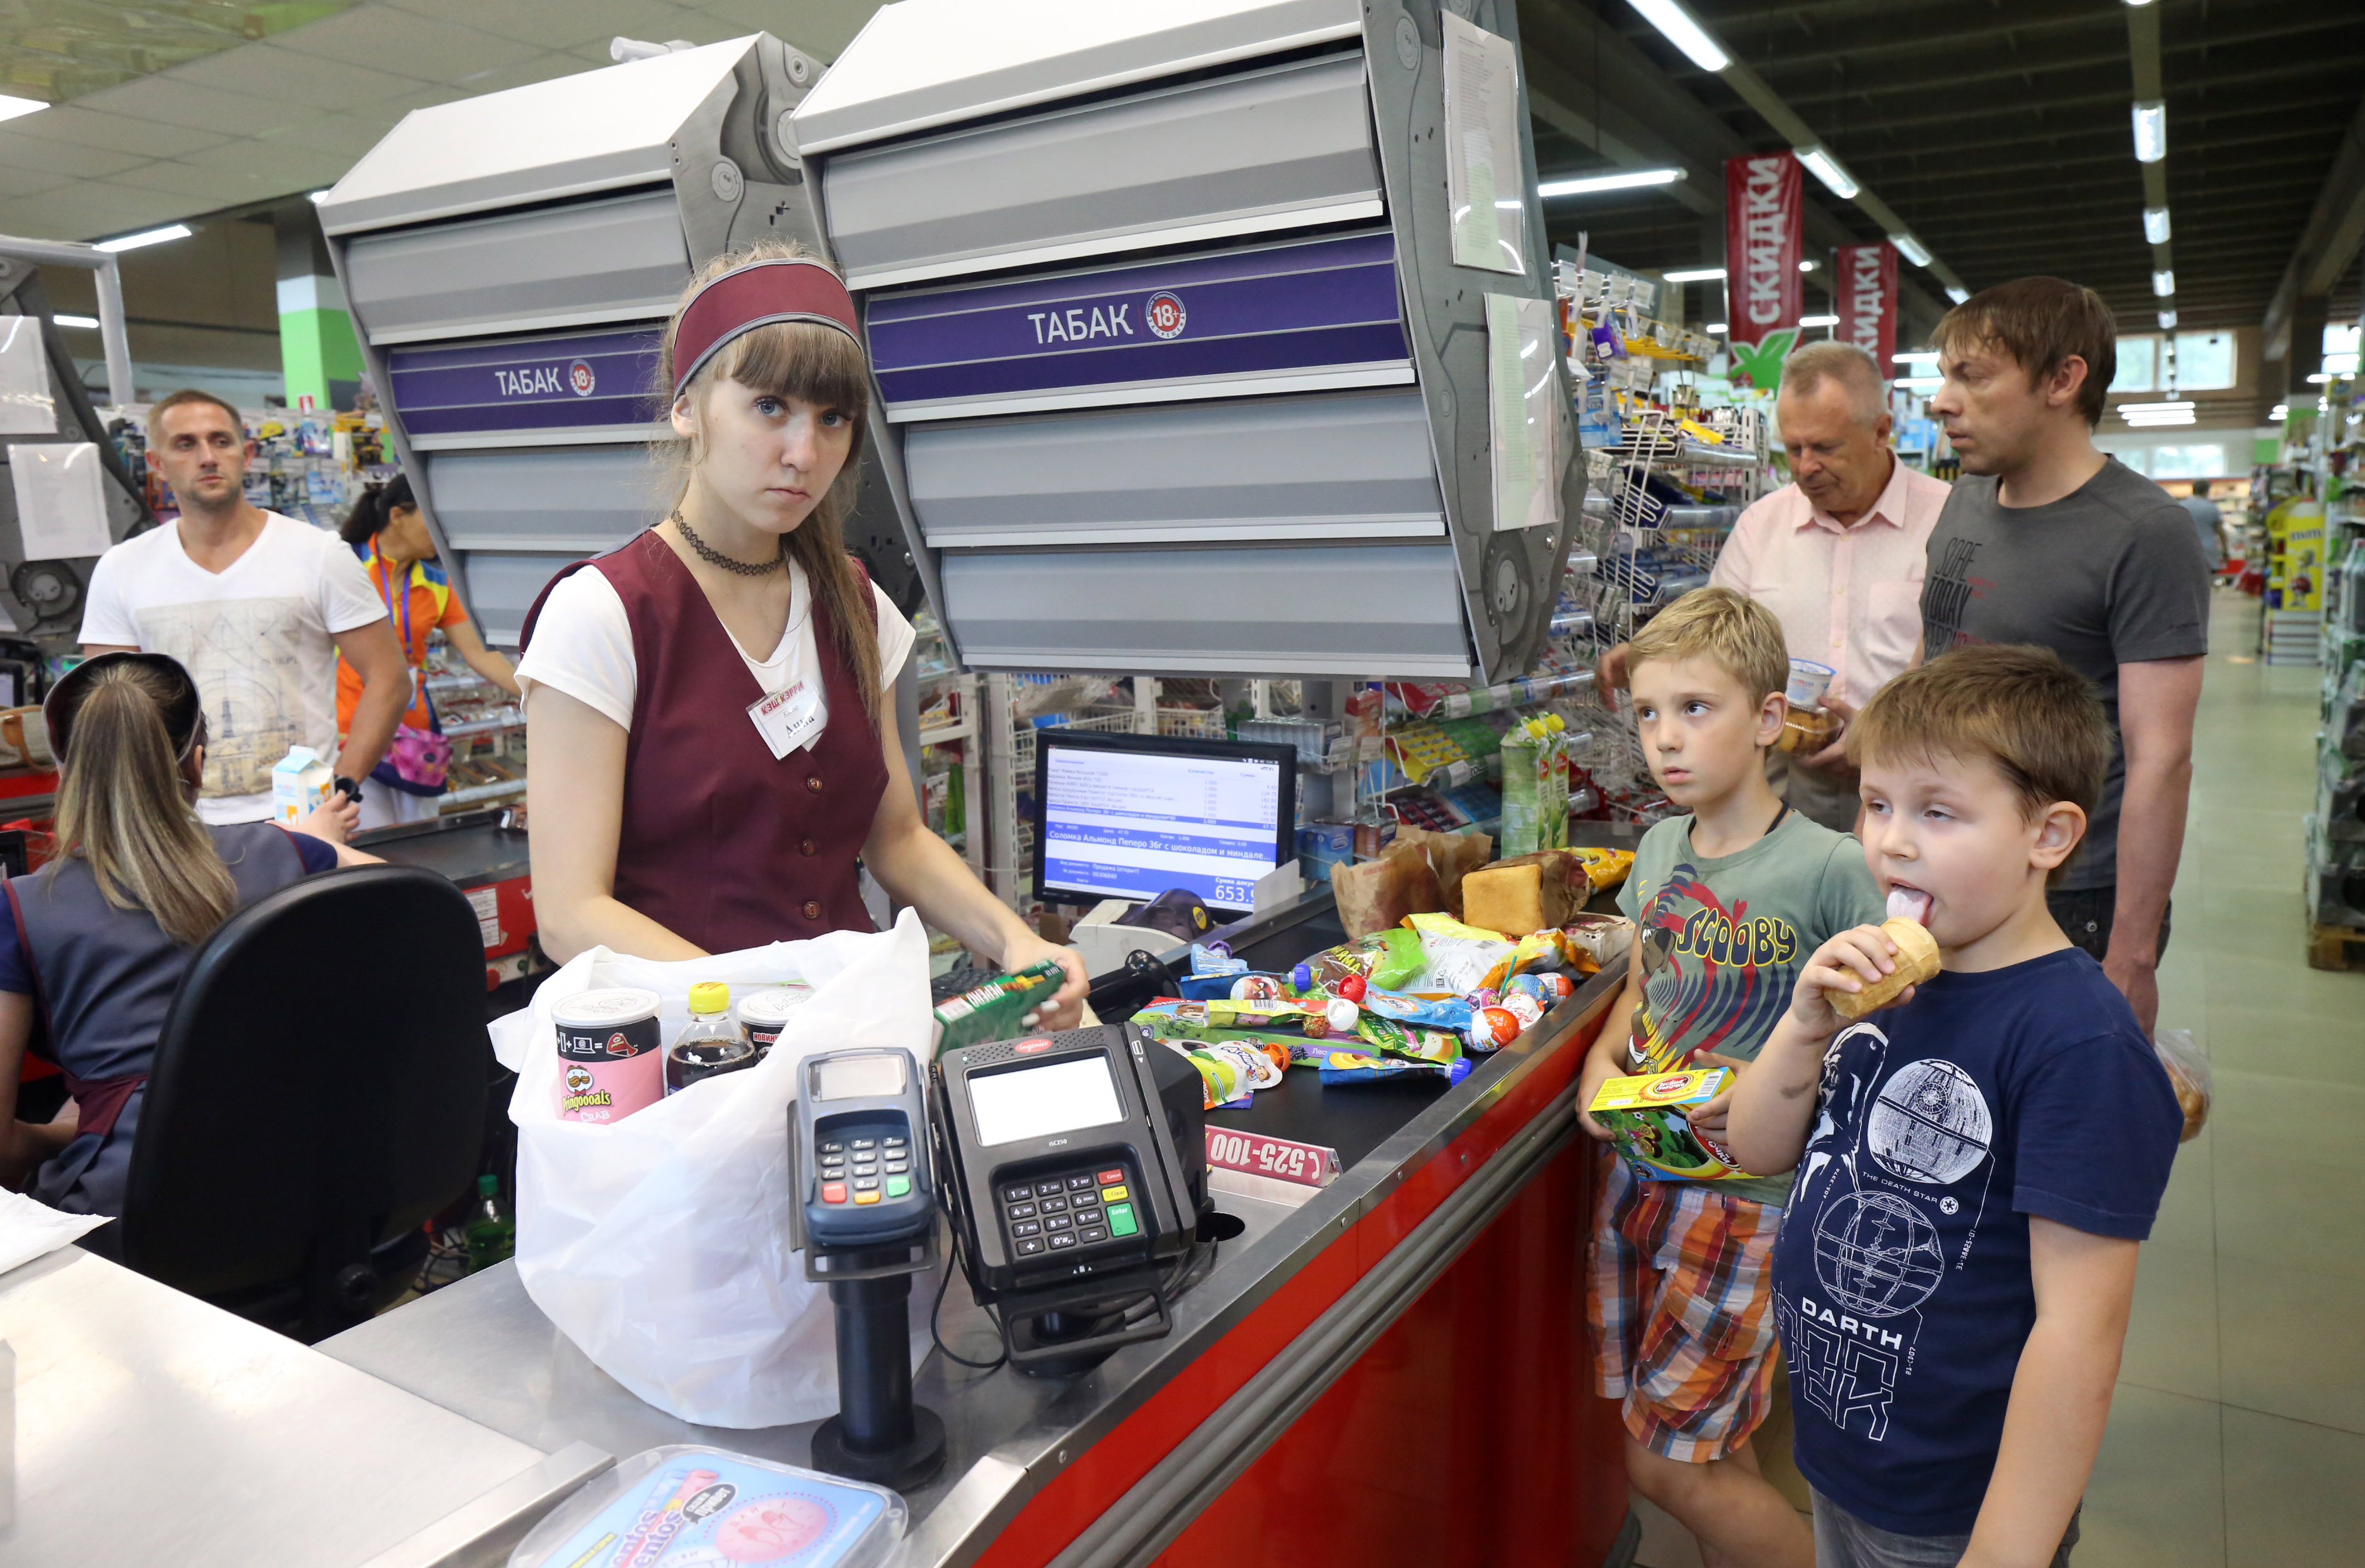 探访俄远东大超市:顾客稀少氛围冷清,最欢迎中国游客到来